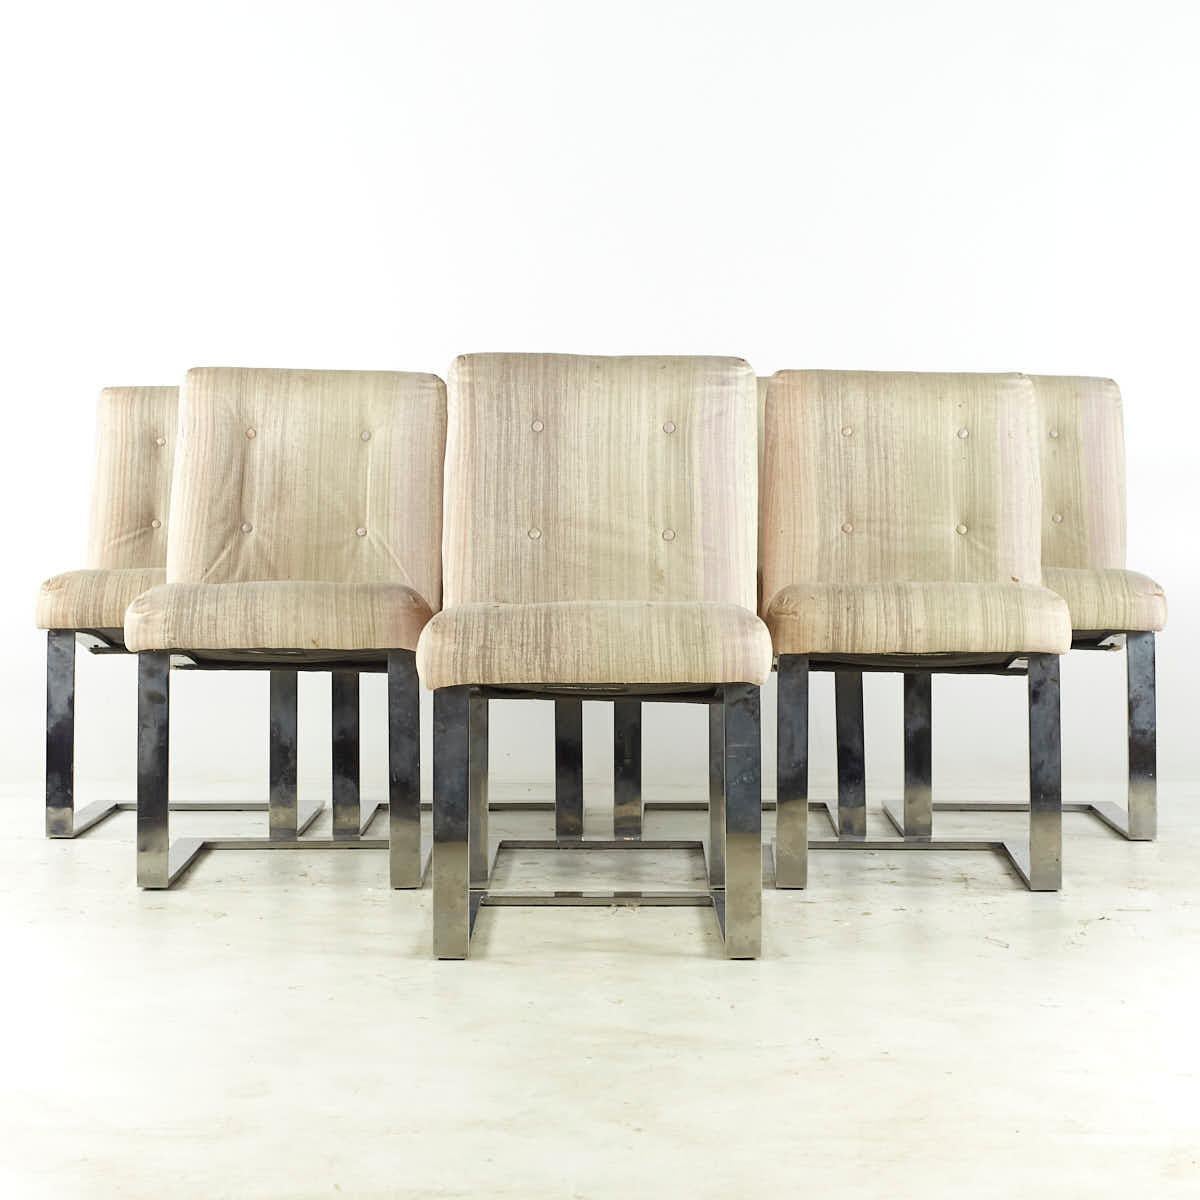 Paul Evans for Directional Mid Century Chrome Cantilever Dining Chairs - Set of 8

Chaque chaise mesure : 19,75 de large x 23 de profond x 33,5 de haut, avec une hauteur d'assise et un dégagement de 19,5 pouces.

Tous les meubles peuvent être